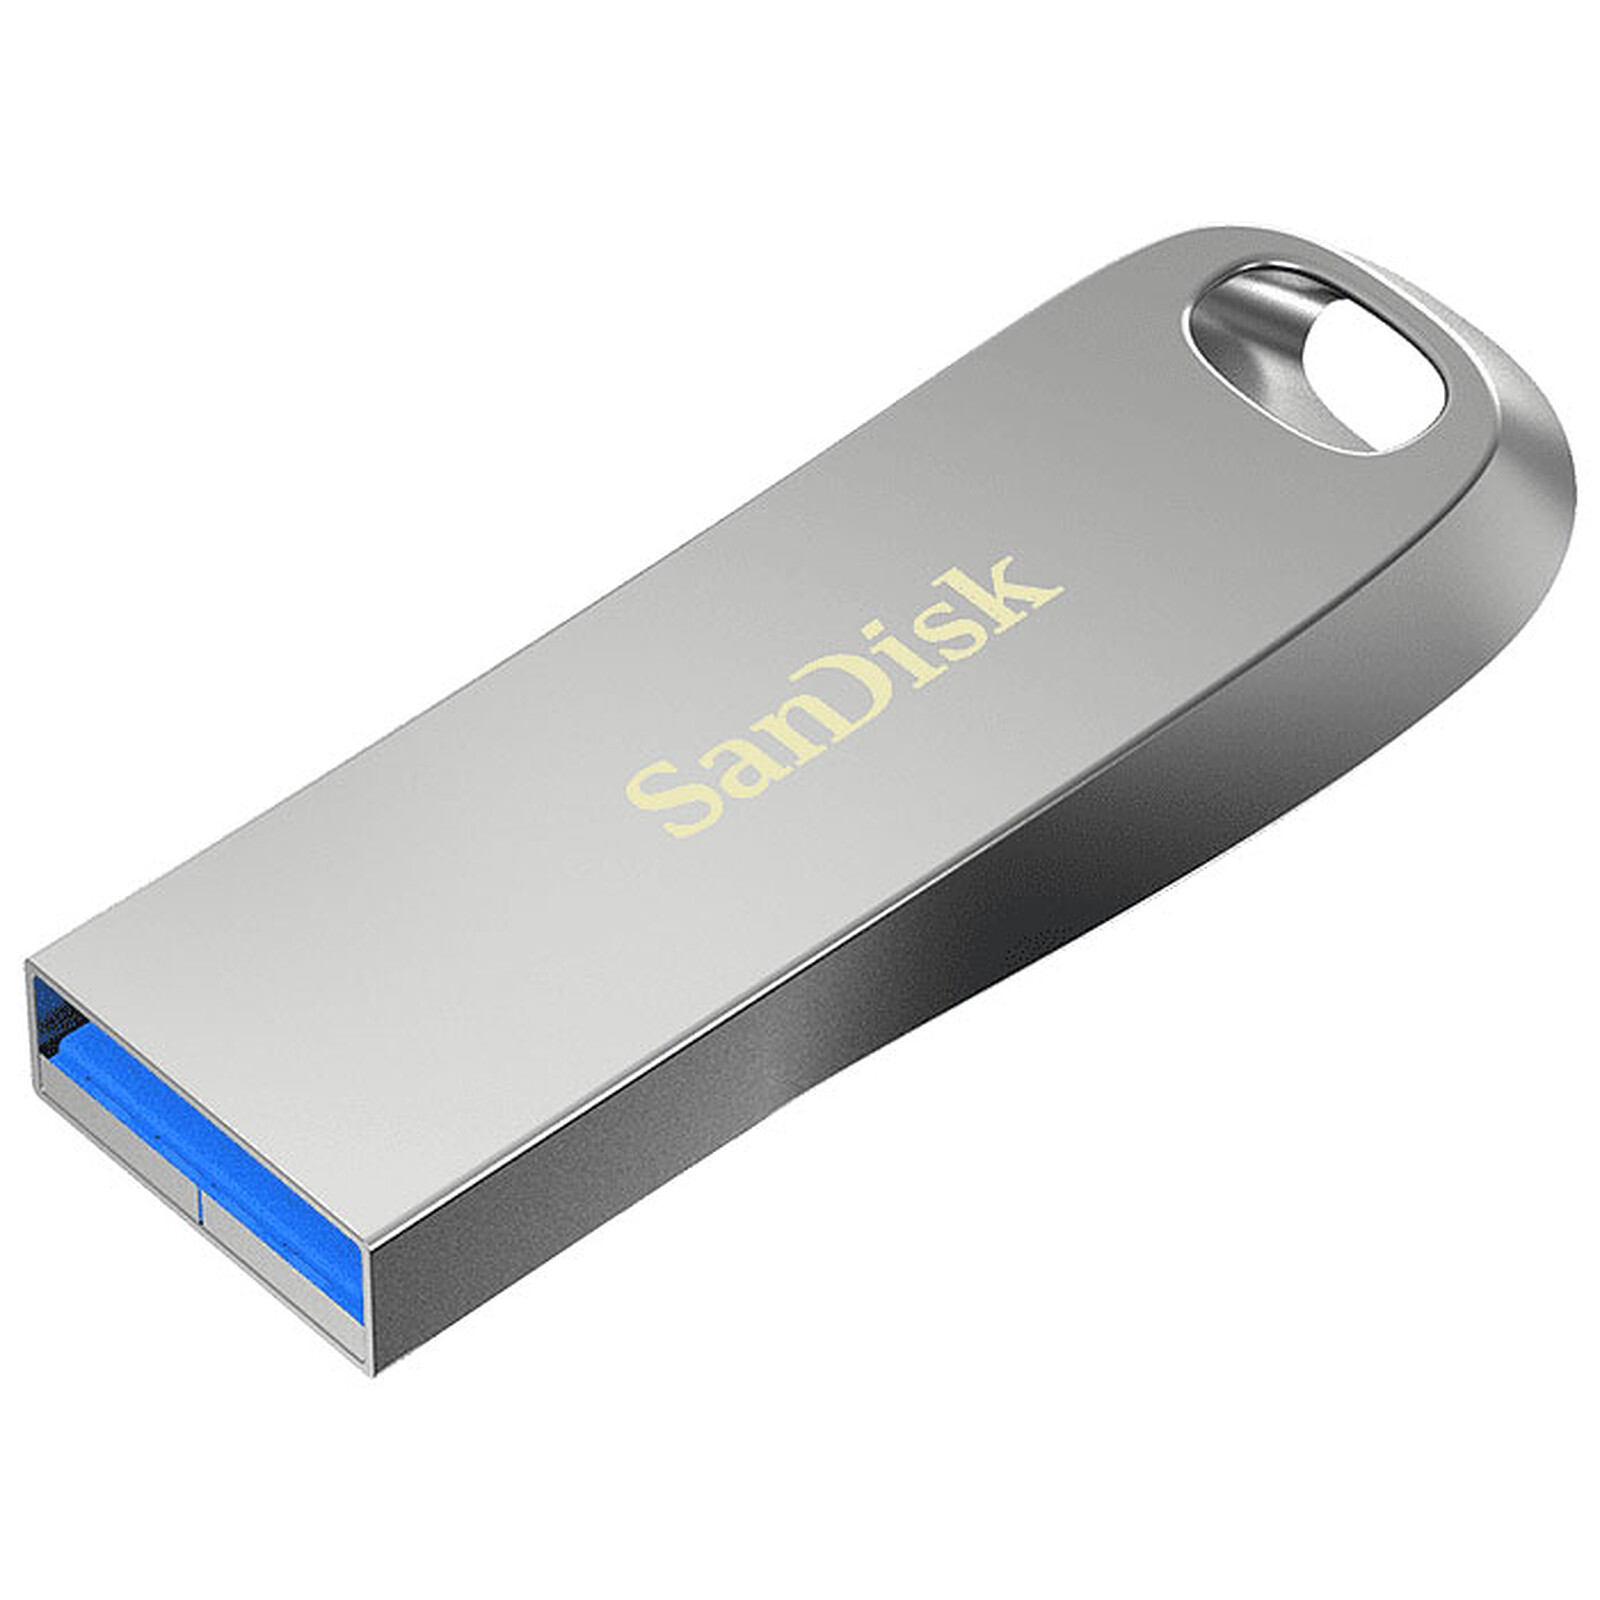 SanDisk Clé Ultra USB 3.0 32 Go - Clé USB - LDLC